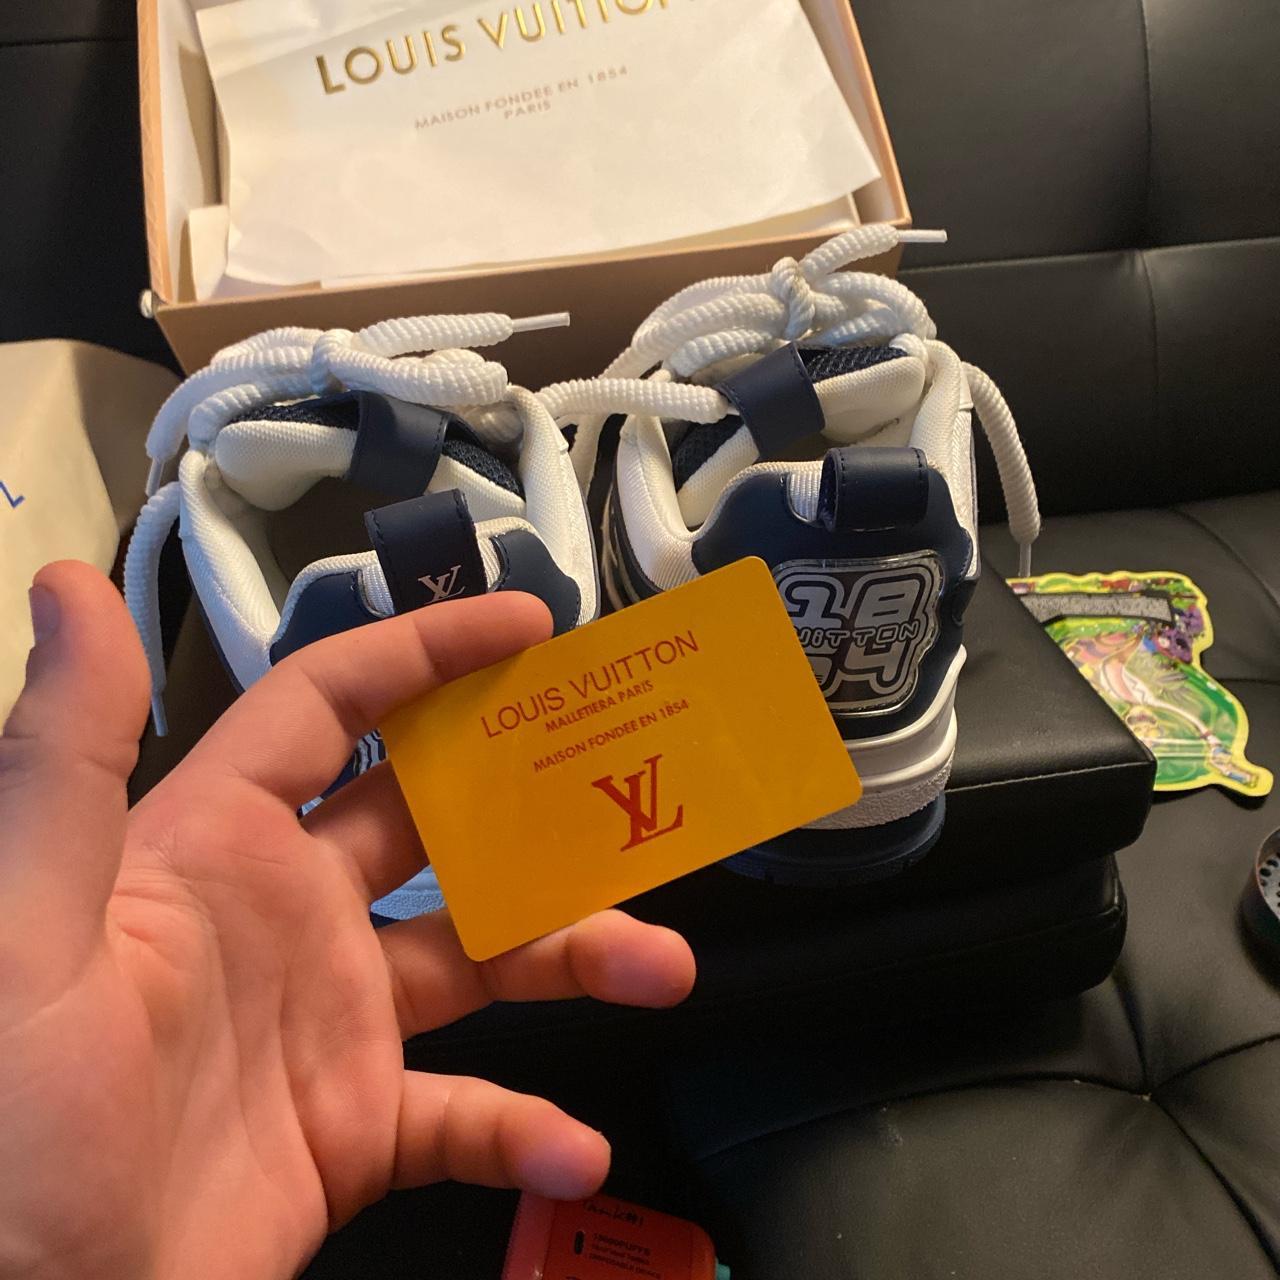 Louis Vuitton woman's track suite size 36 blue & - Depop